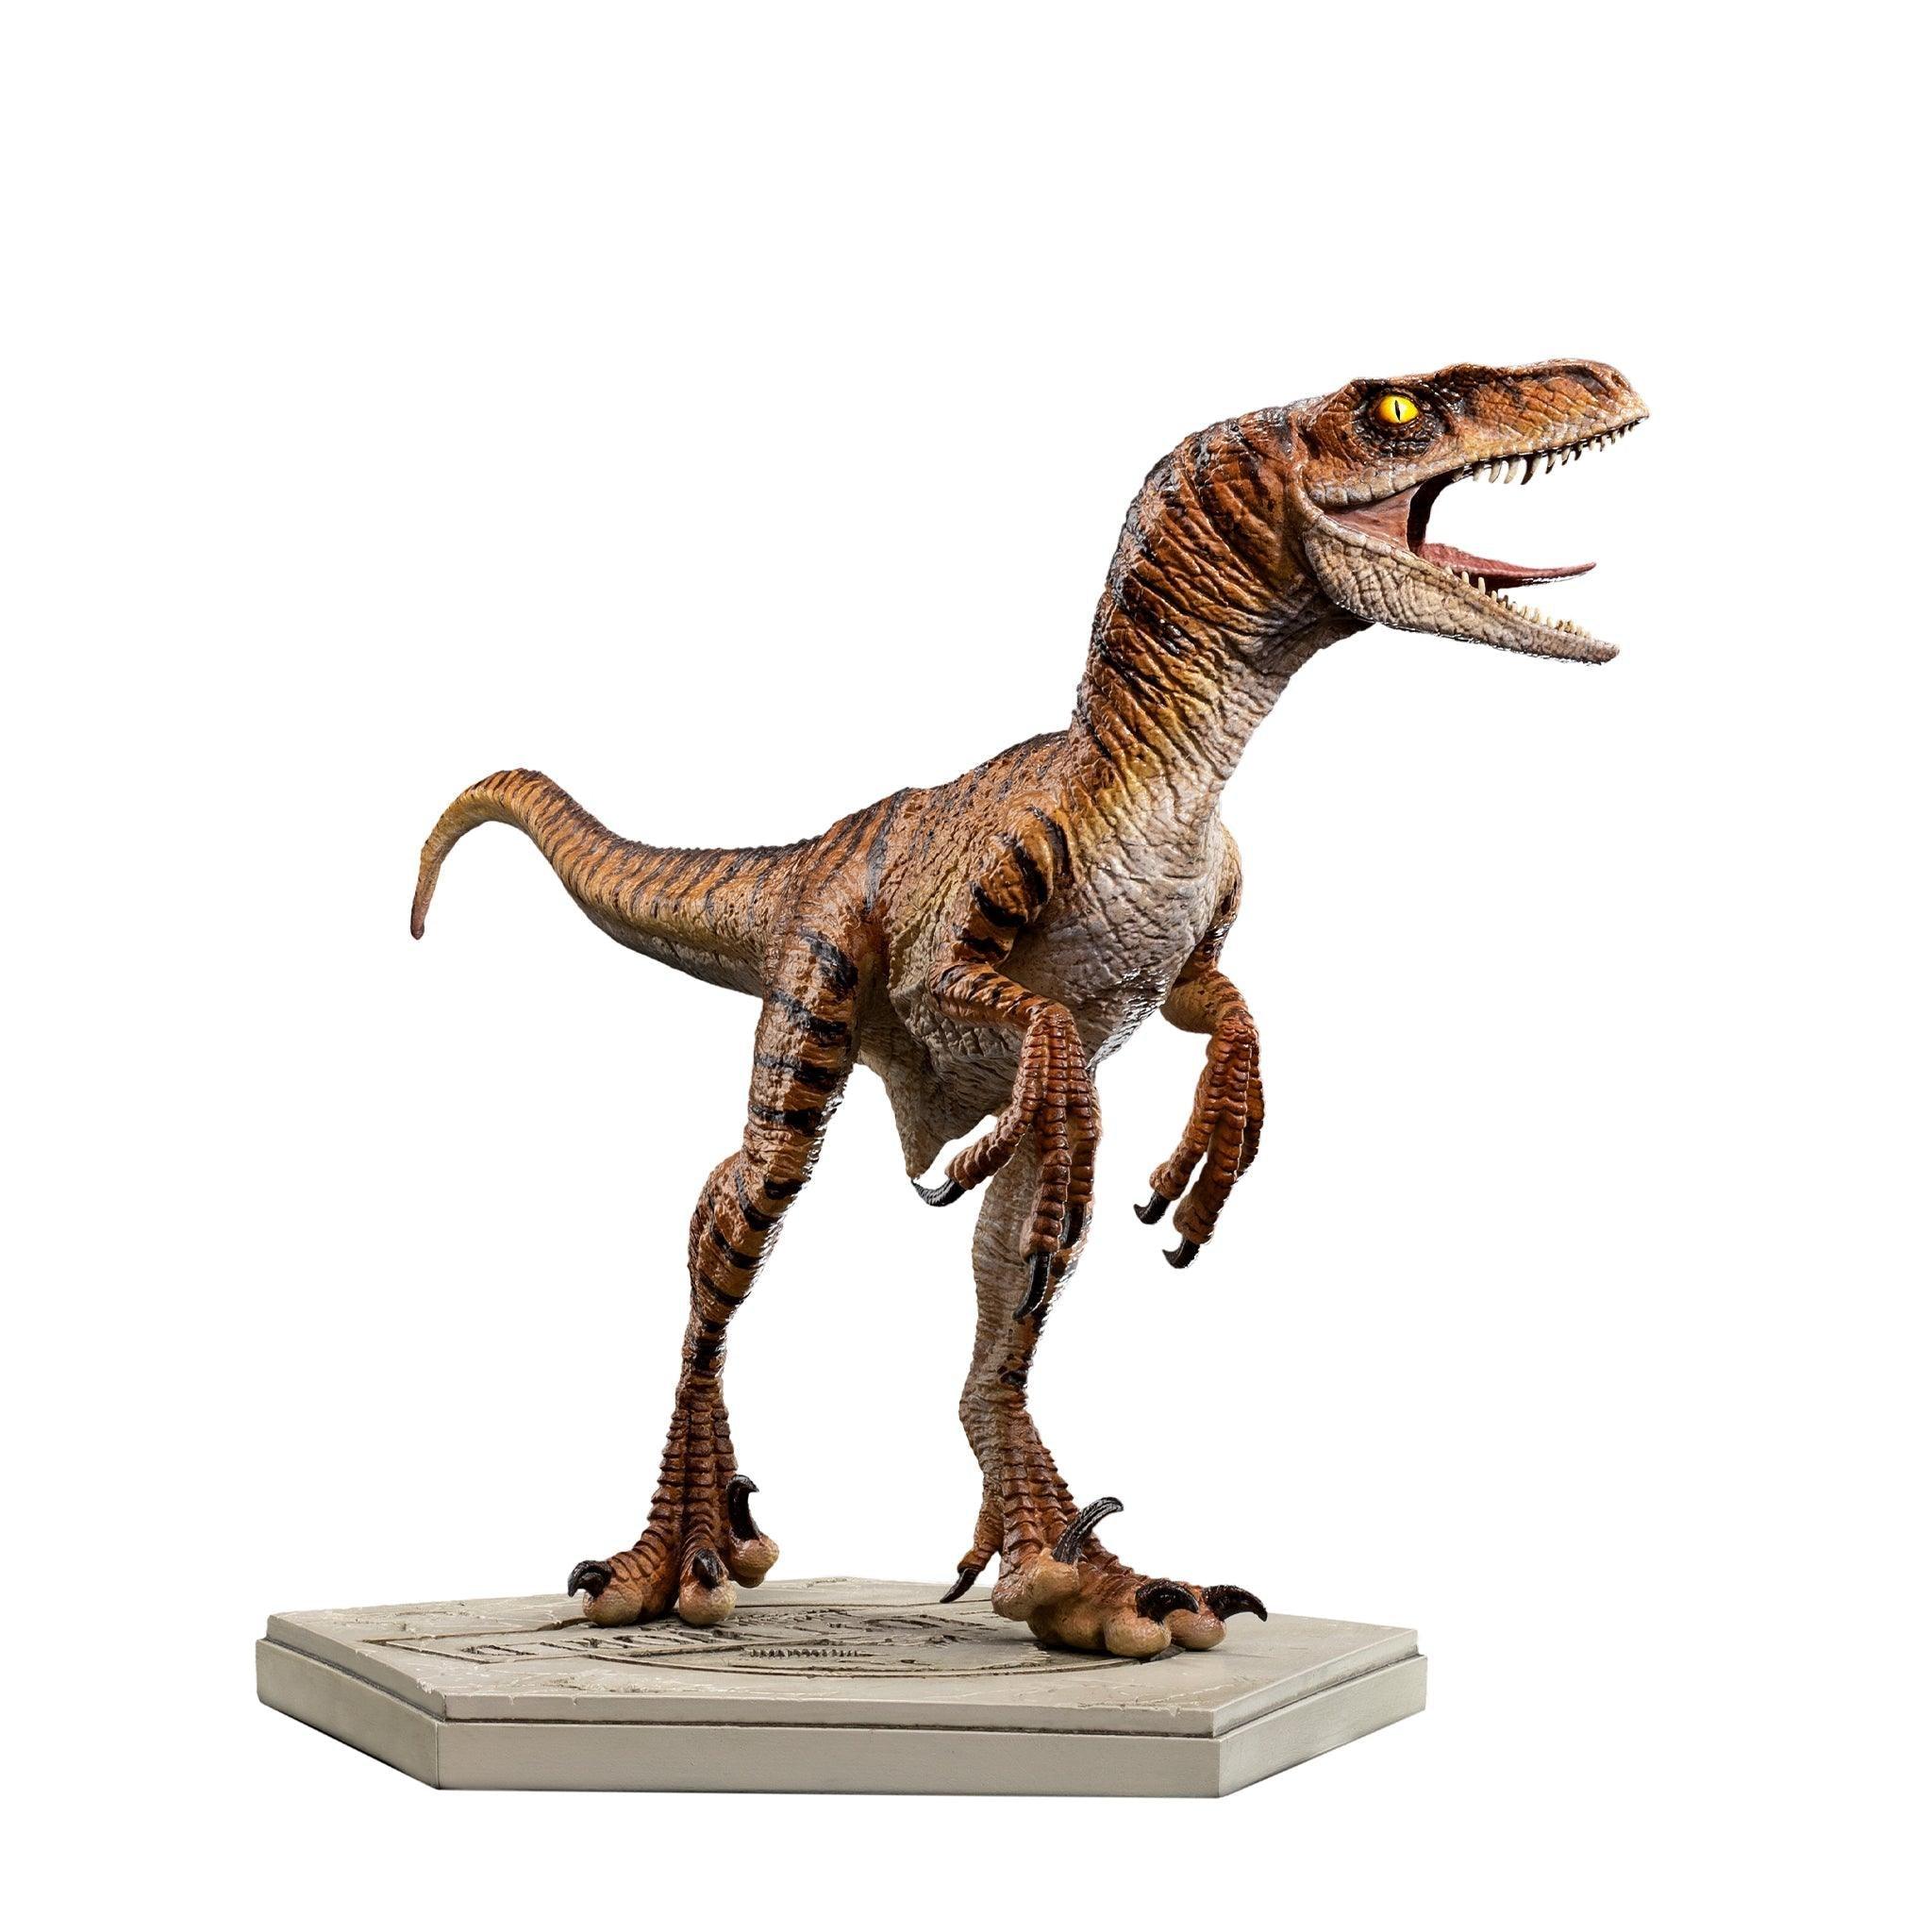 IRO50331 Jurassic Park 2: Lost World - Velociraptor 1:10 Scale Statue - Iron Studios - Titan Pop Culture